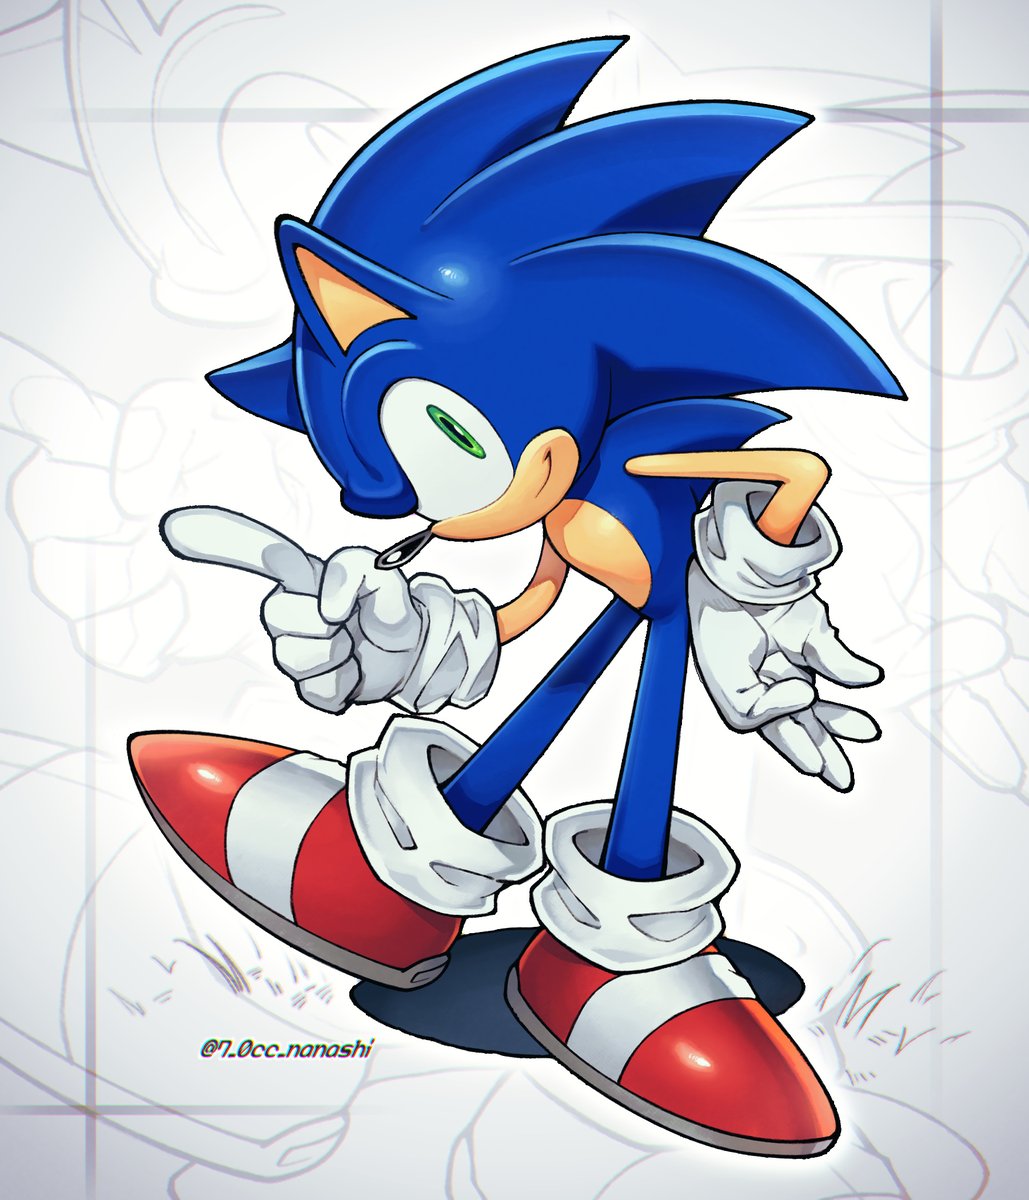 ソニック 「「ひとっ走り行こうぜ?」#SonicTheHedgehog 」|7.0ccのイラスト